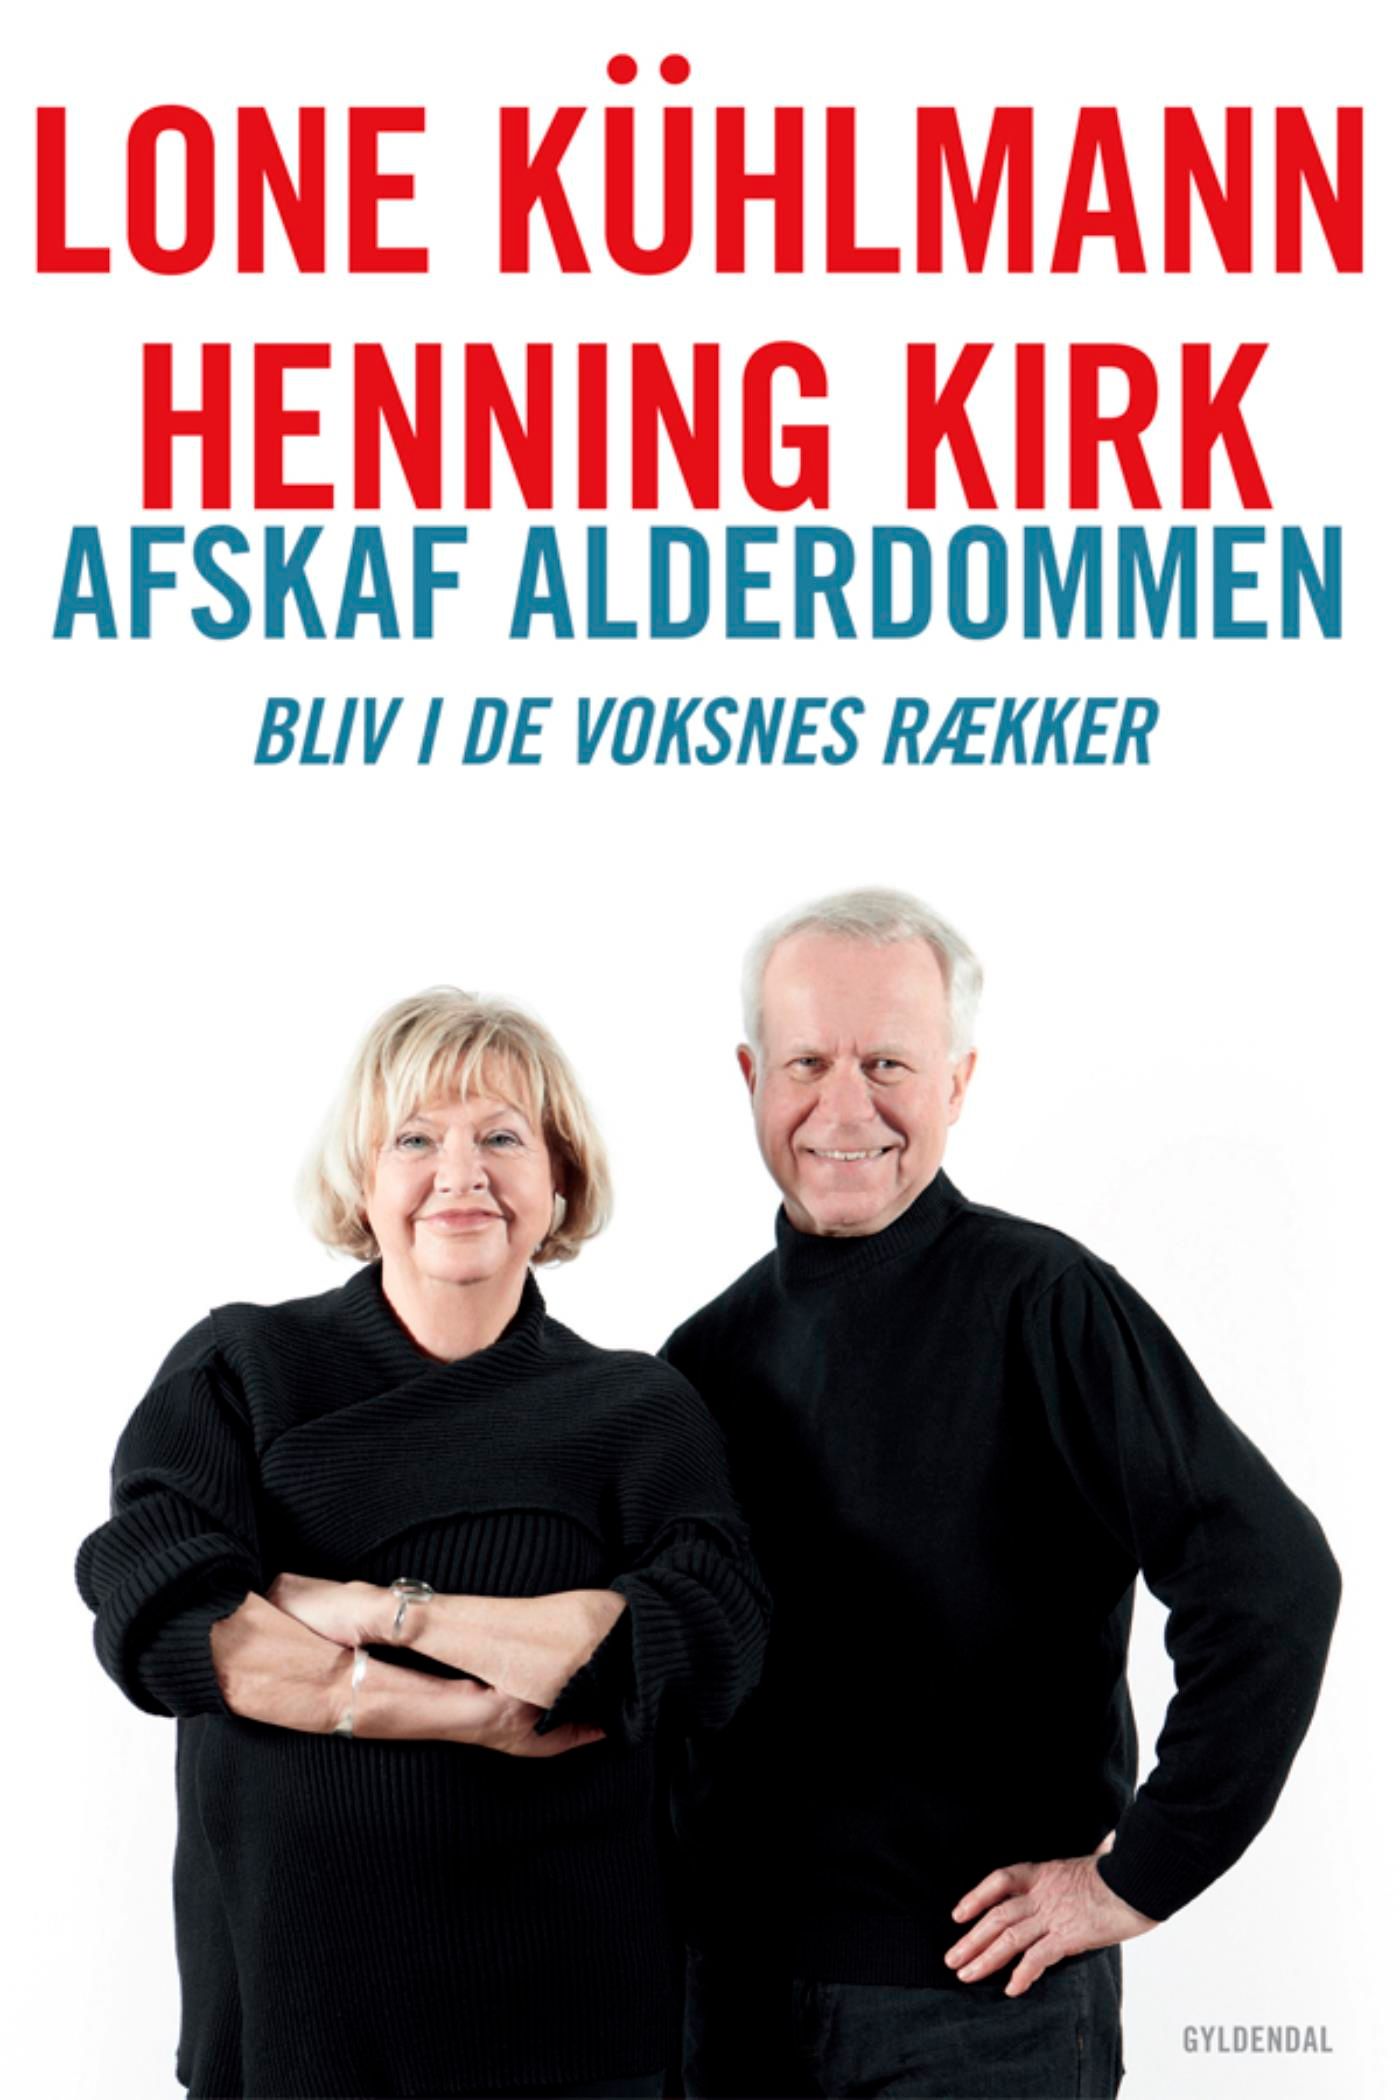 Afskaf alderdommen, e-bok av Henning Kirk, Lone Kühlmann